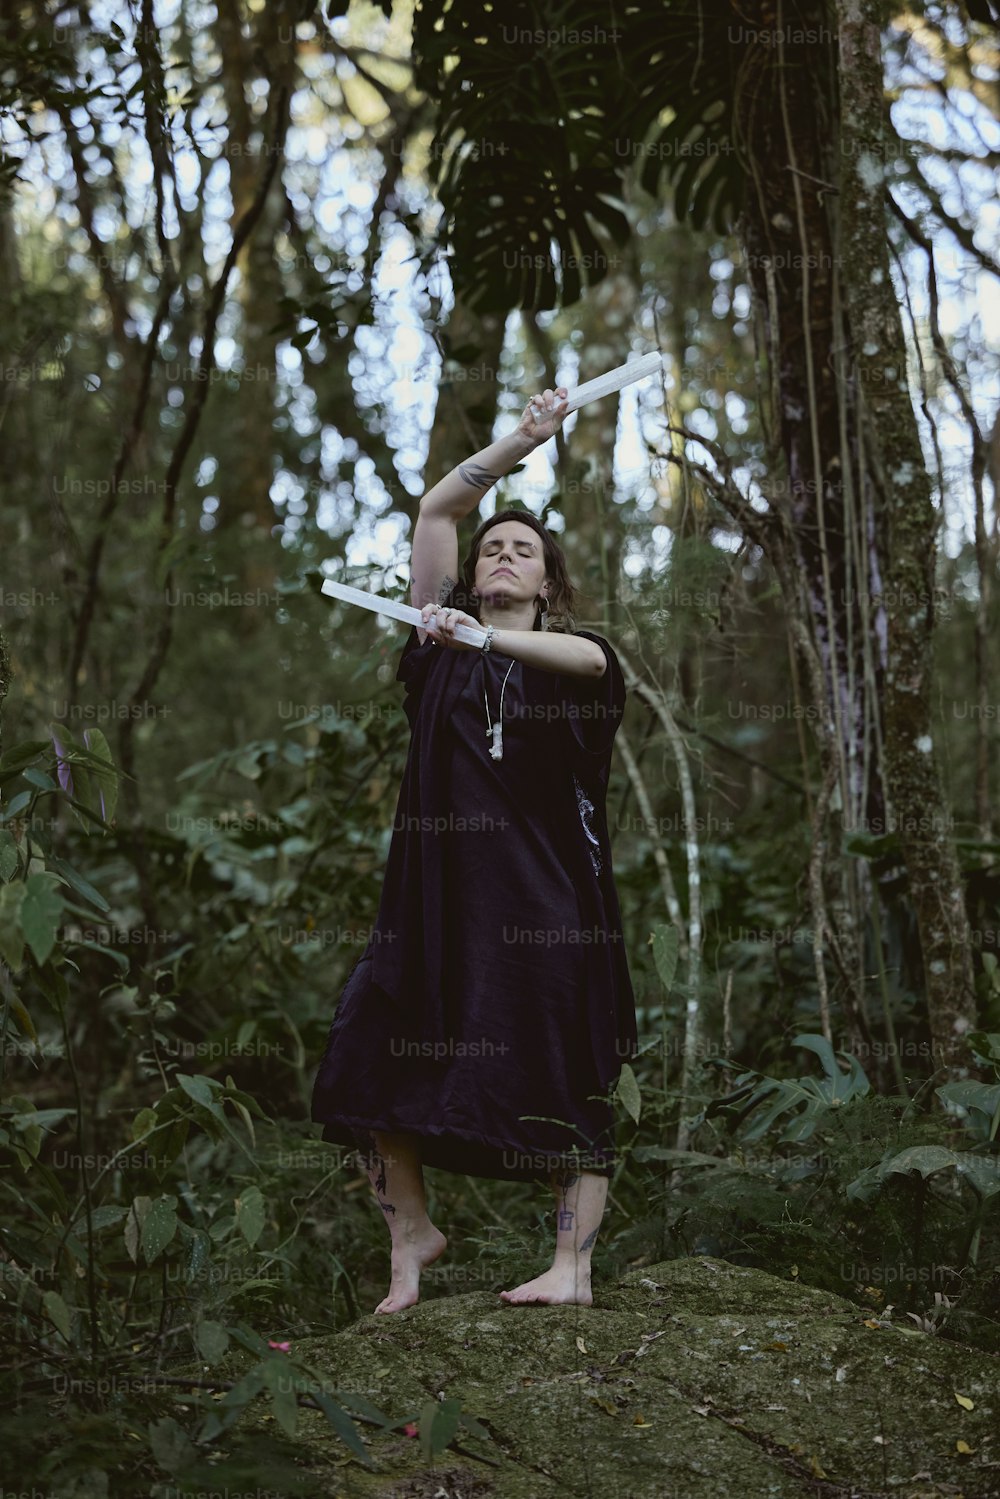 Una mujer con un vestido púrpura sosteniendo una espada en un bosque